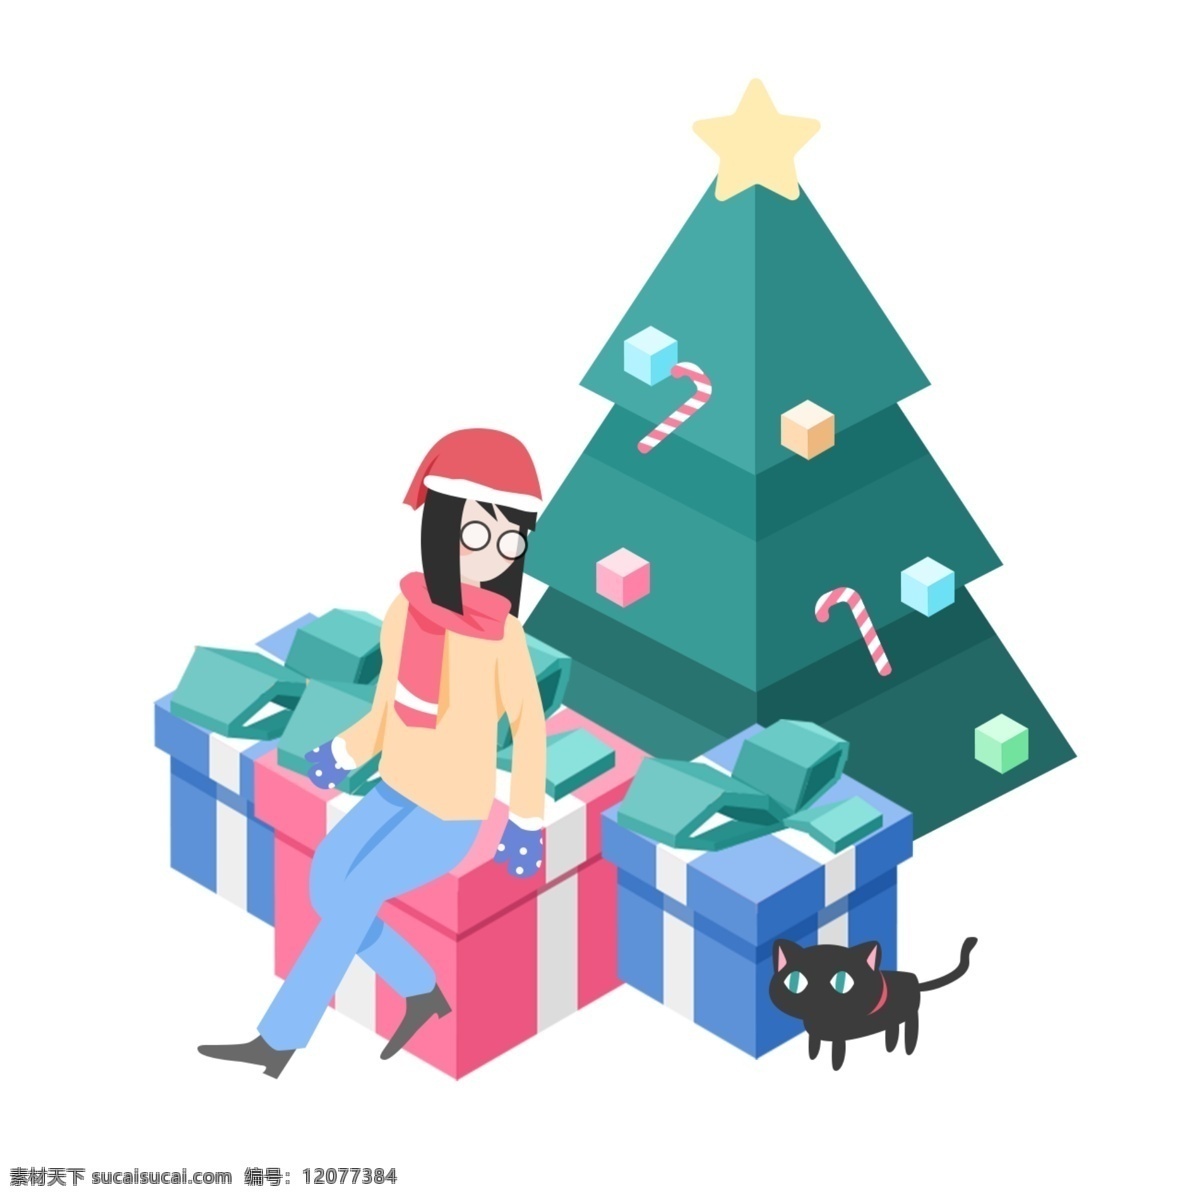 圣诞节 女孩 收礼 物 d 立体 场景 圣诞 圣诞夜 平安夜 圣诞树 小猫 收礼物 礼物 2.5d 等轴侧 扁平 插画